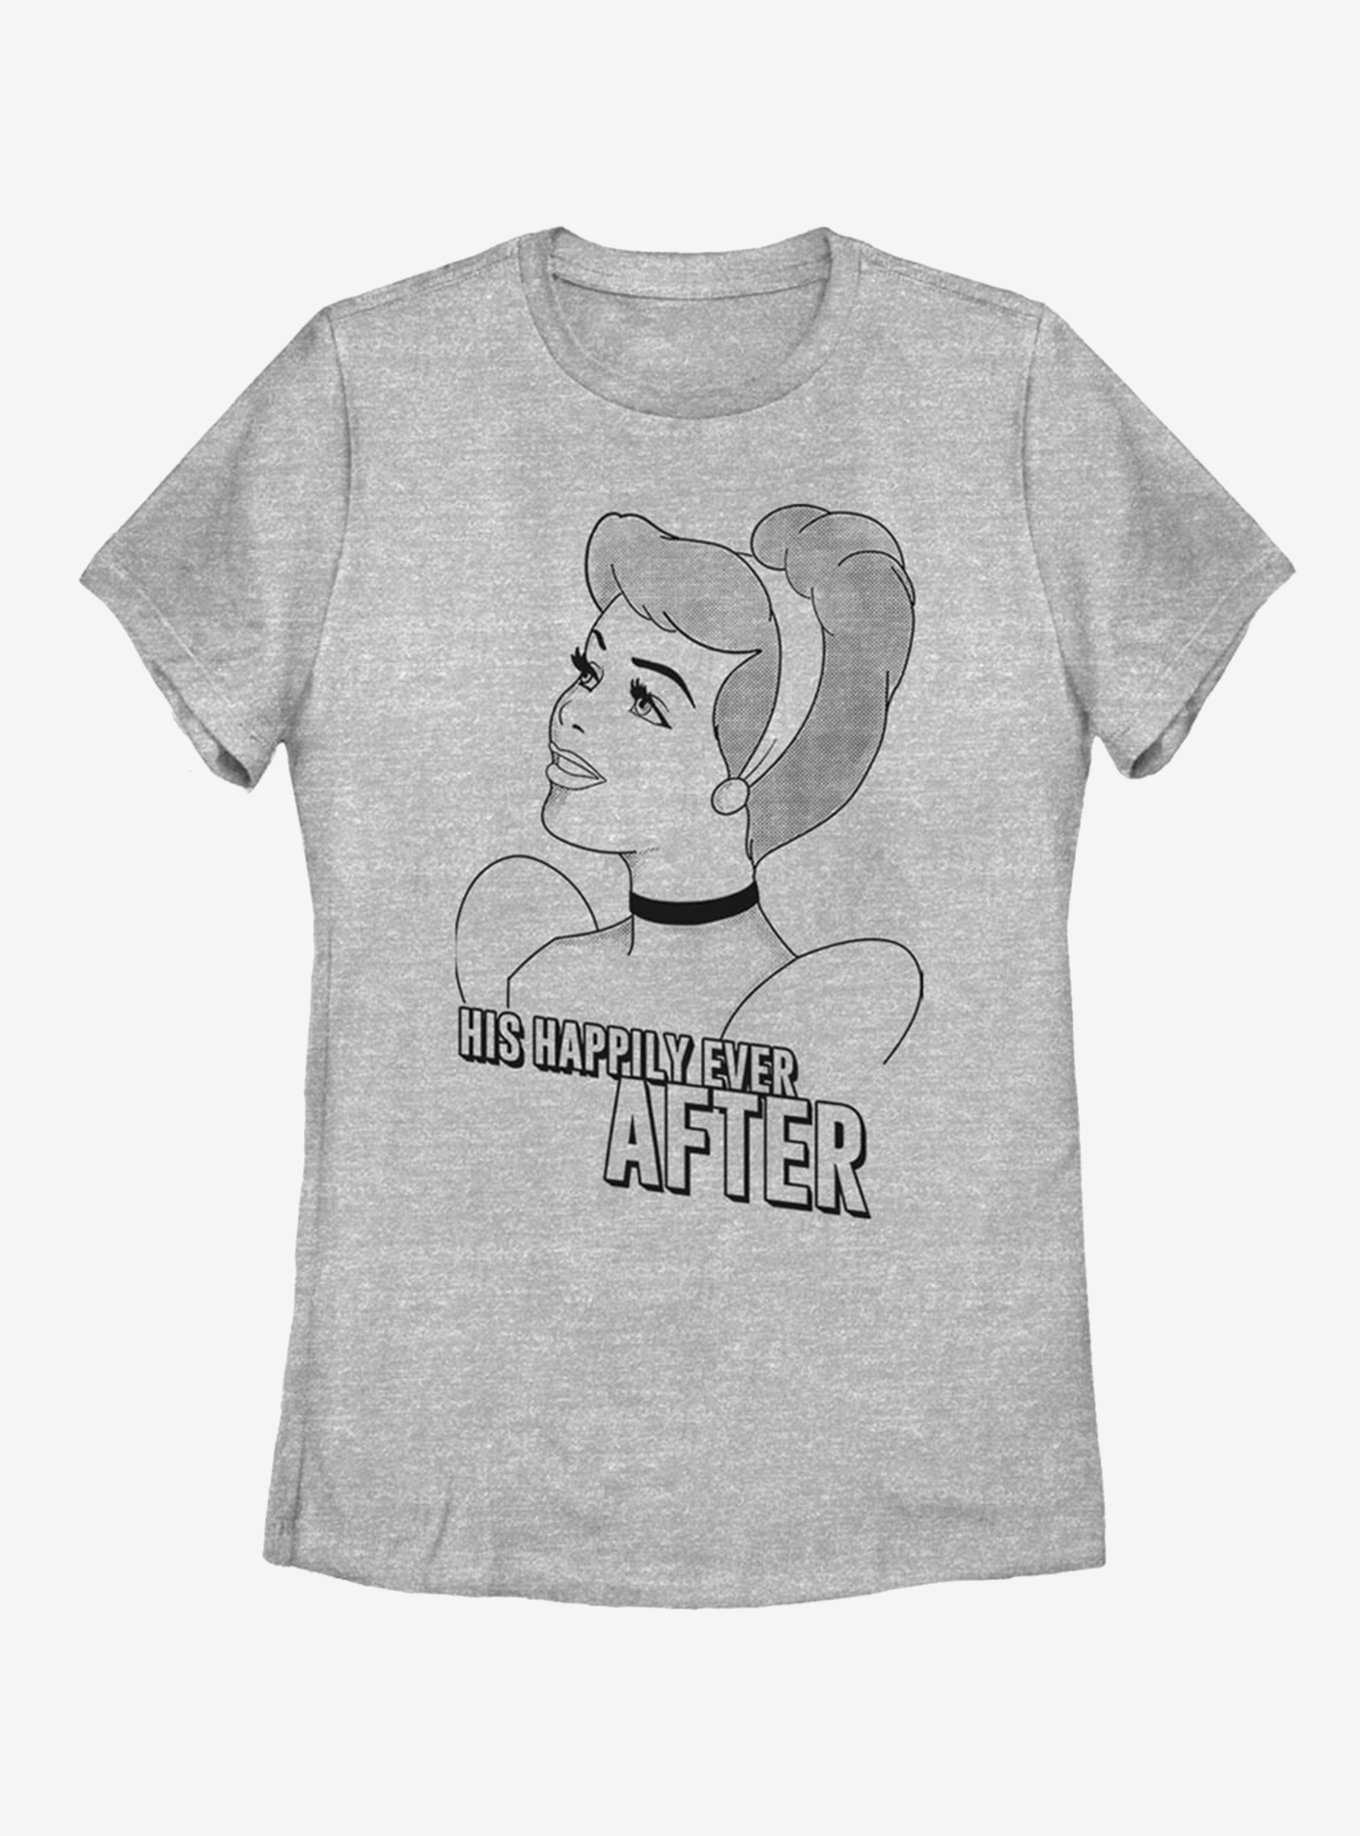 Disney Cinderella Romantic Cindy Womens T-Shirt, , hi-res